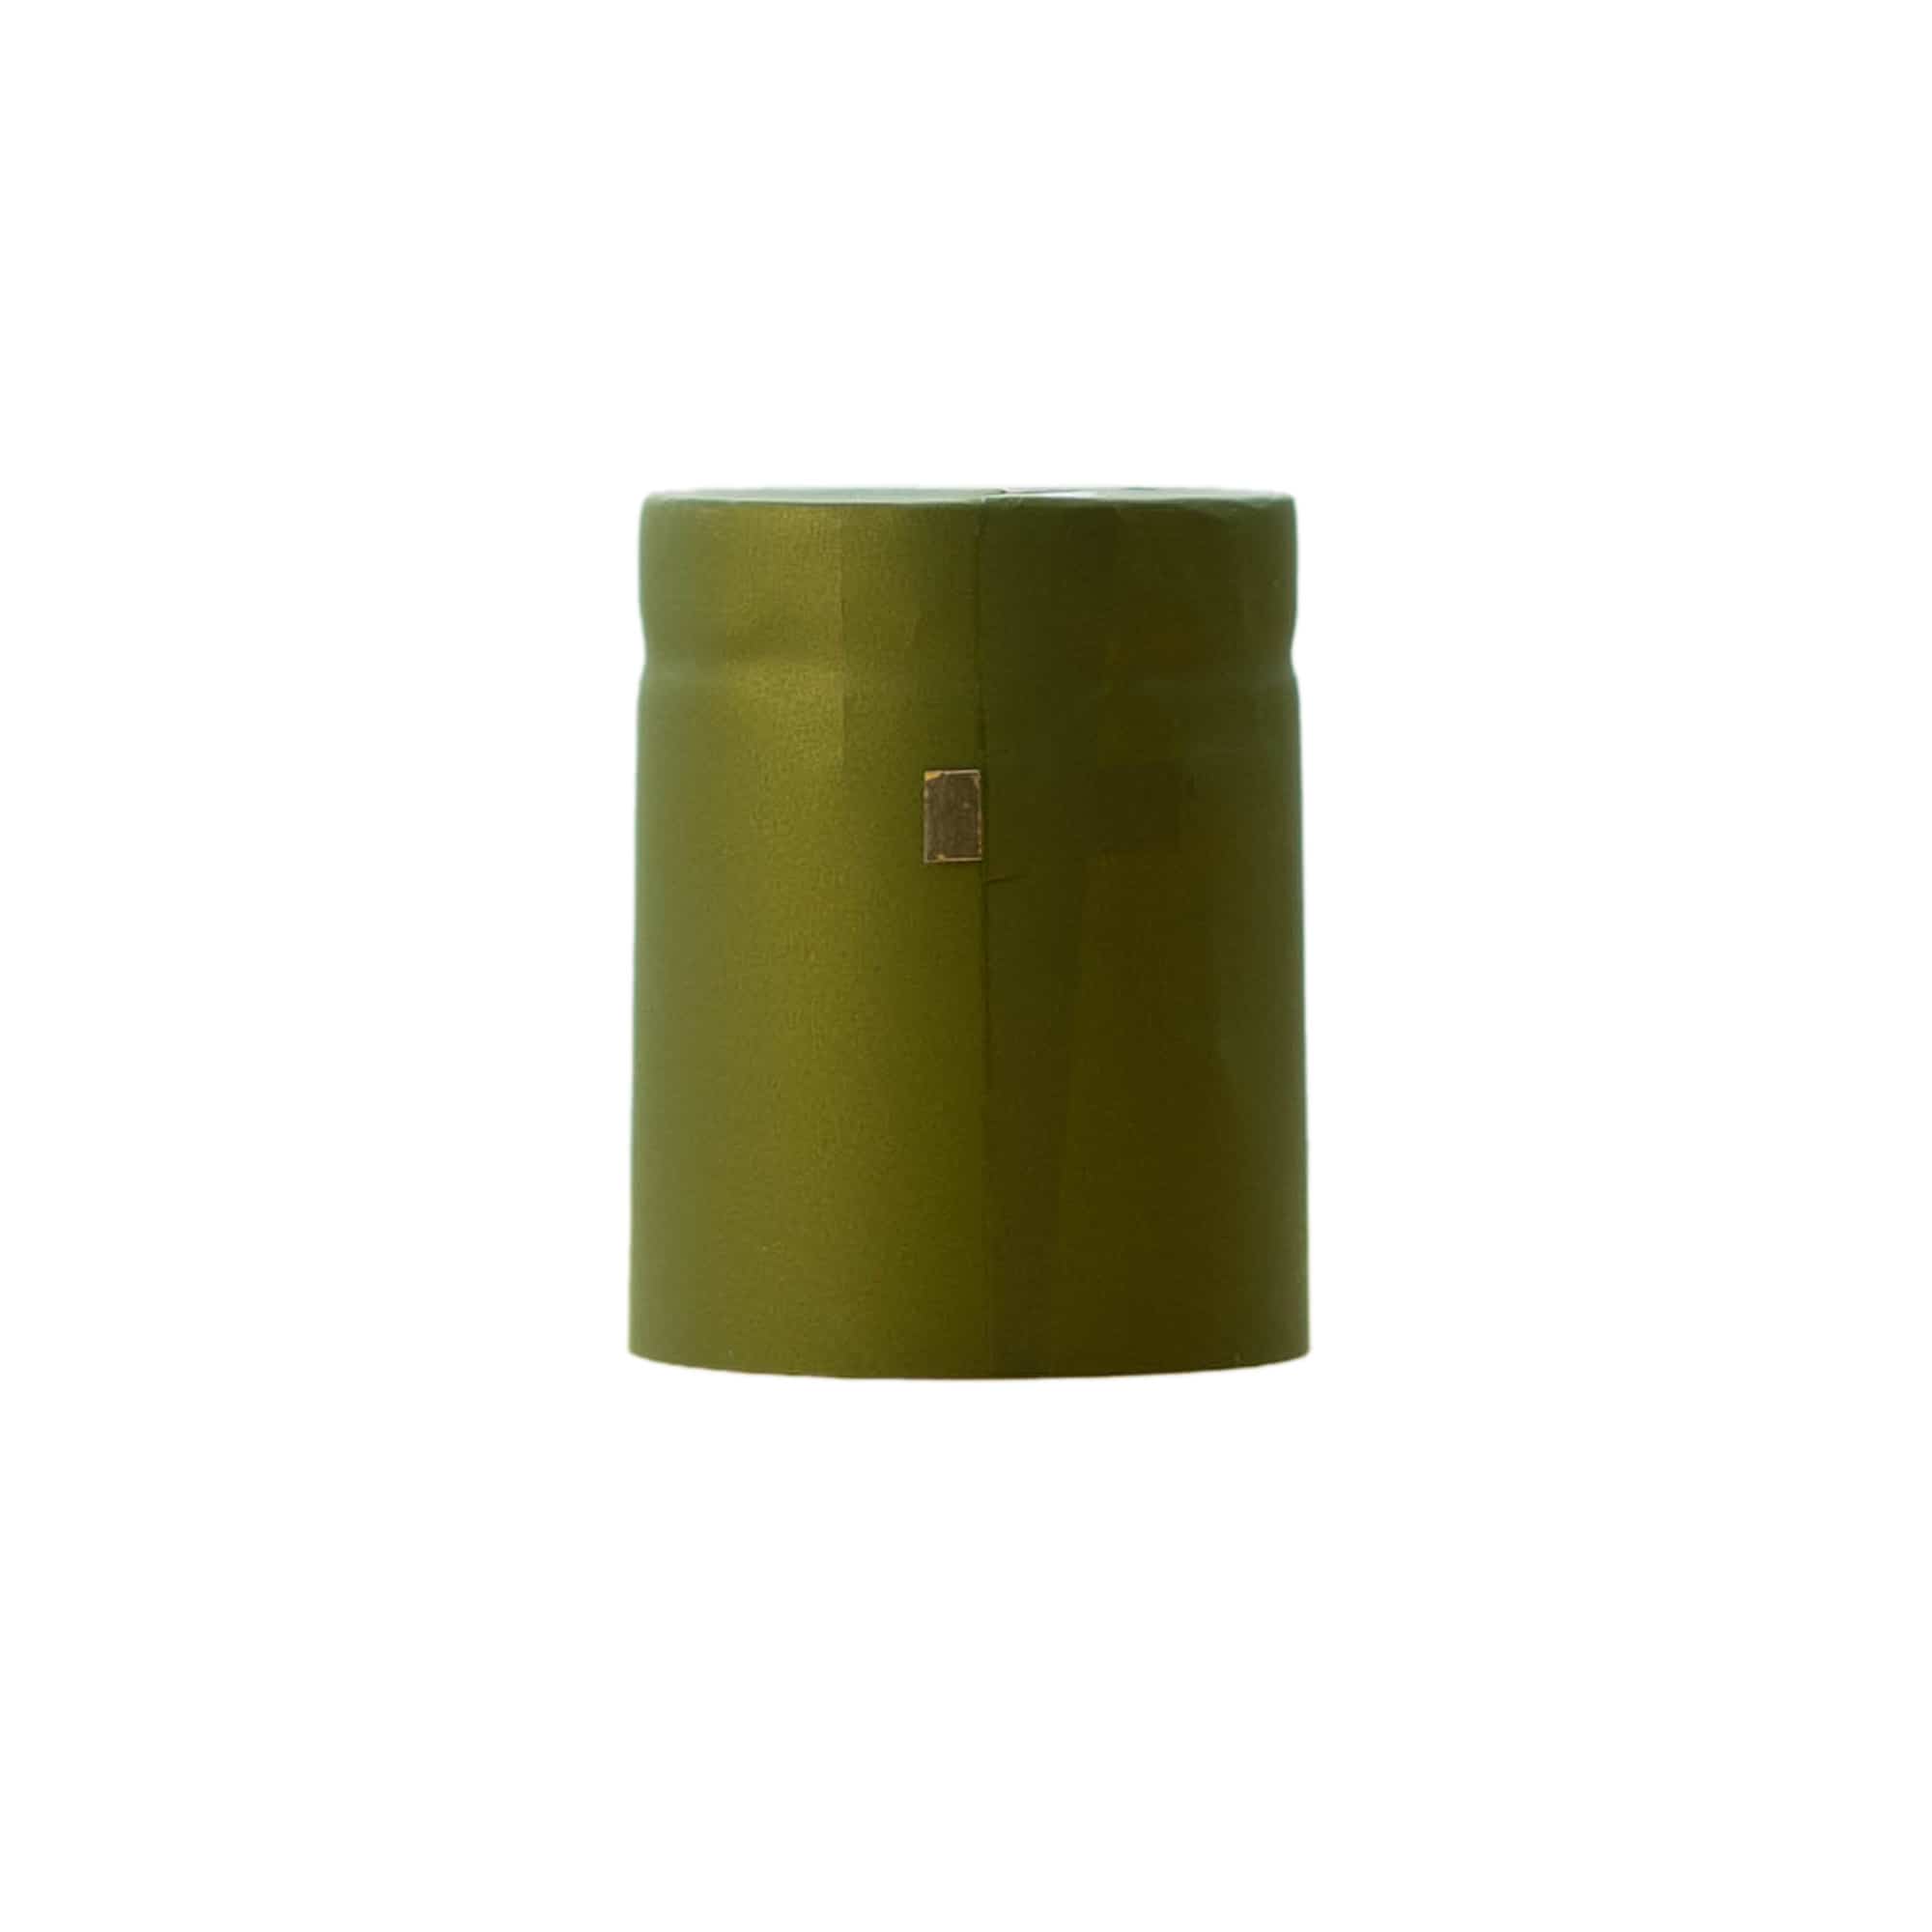 Capsule thermo-rétractable 32x41, plastique PVC, vert olive